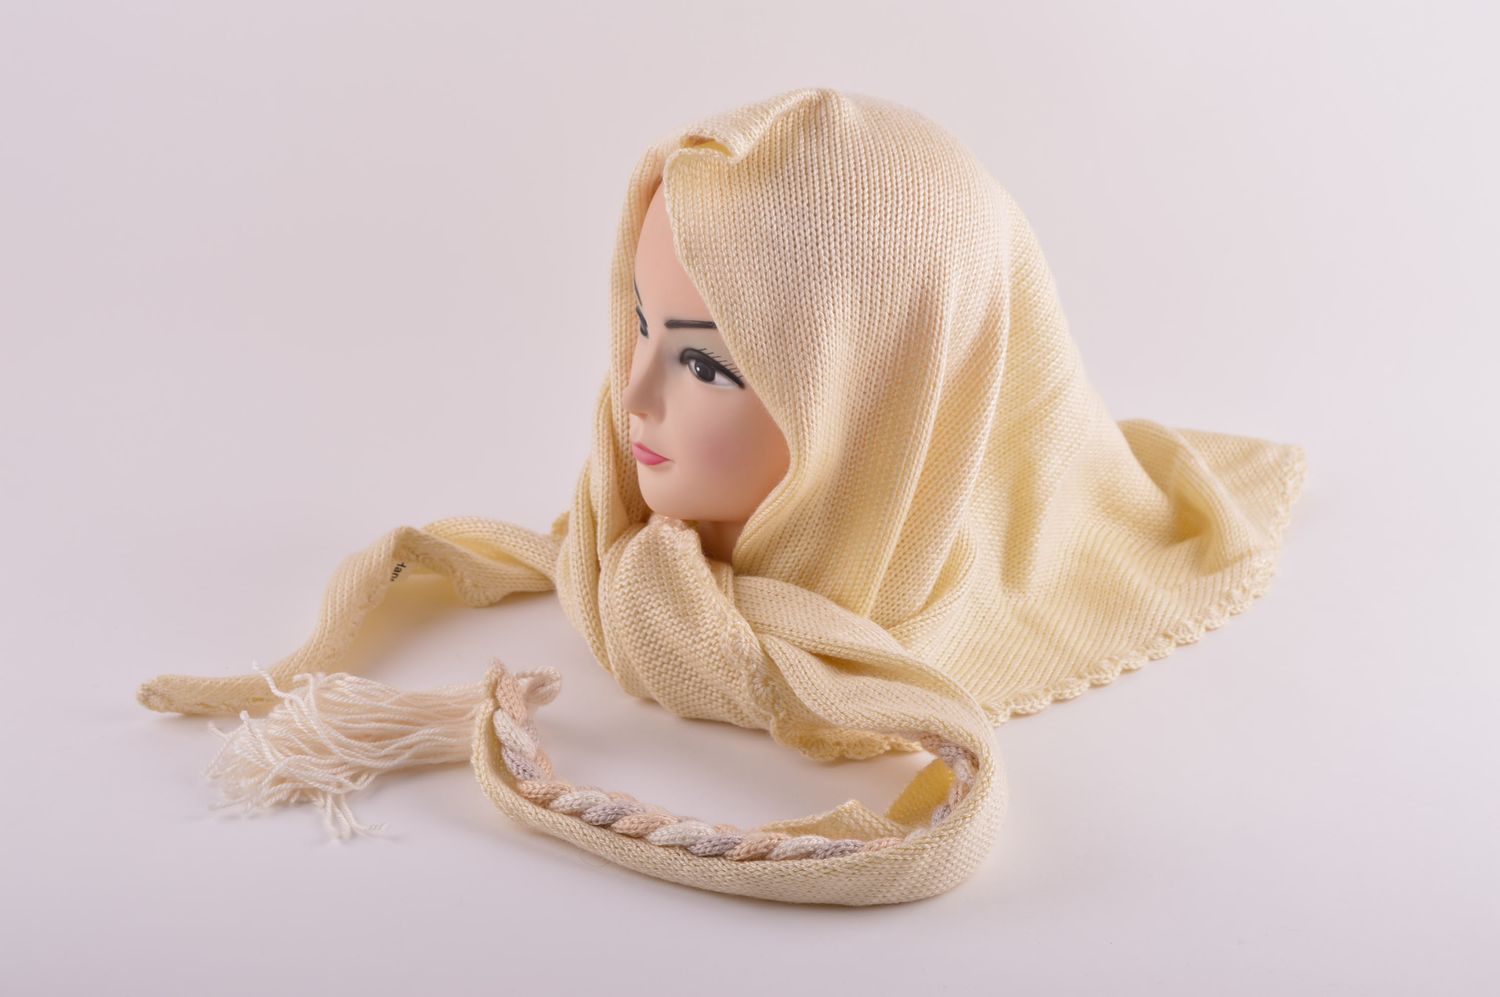 Вязаная шаль ручной работы женская накидка большой бежевый шарф вязаная вещь фото 1